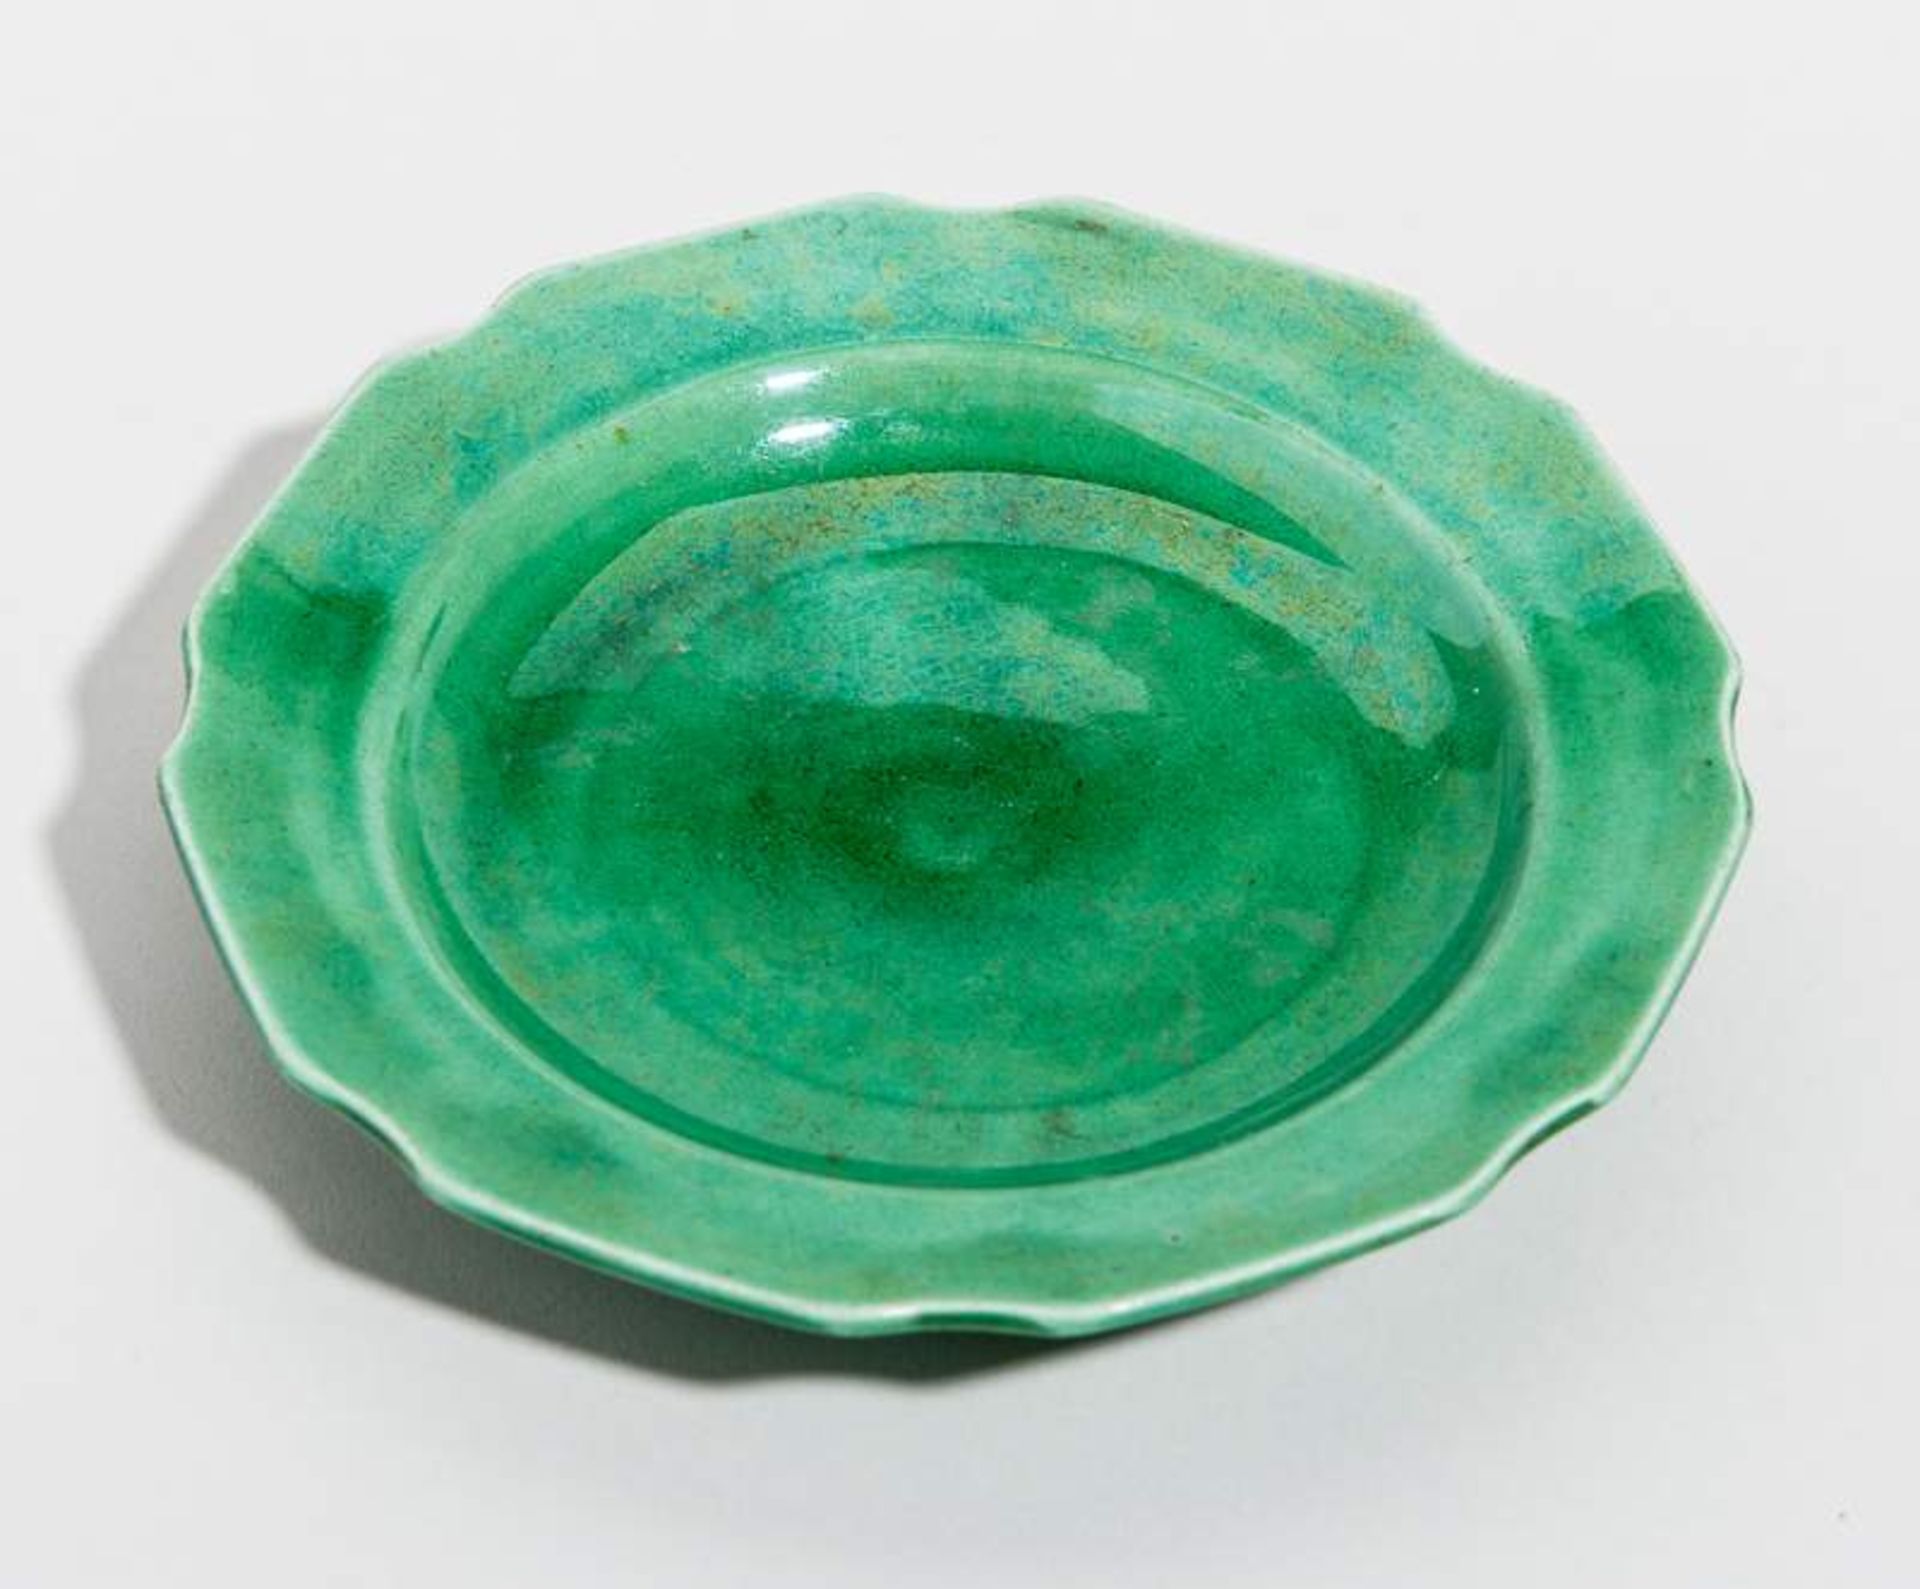 KLEINER TELLER
Grün glasiertes Porzellan. China, Qing-Dynastie, 19. Jh.Oktogonaler Rand, jeweils